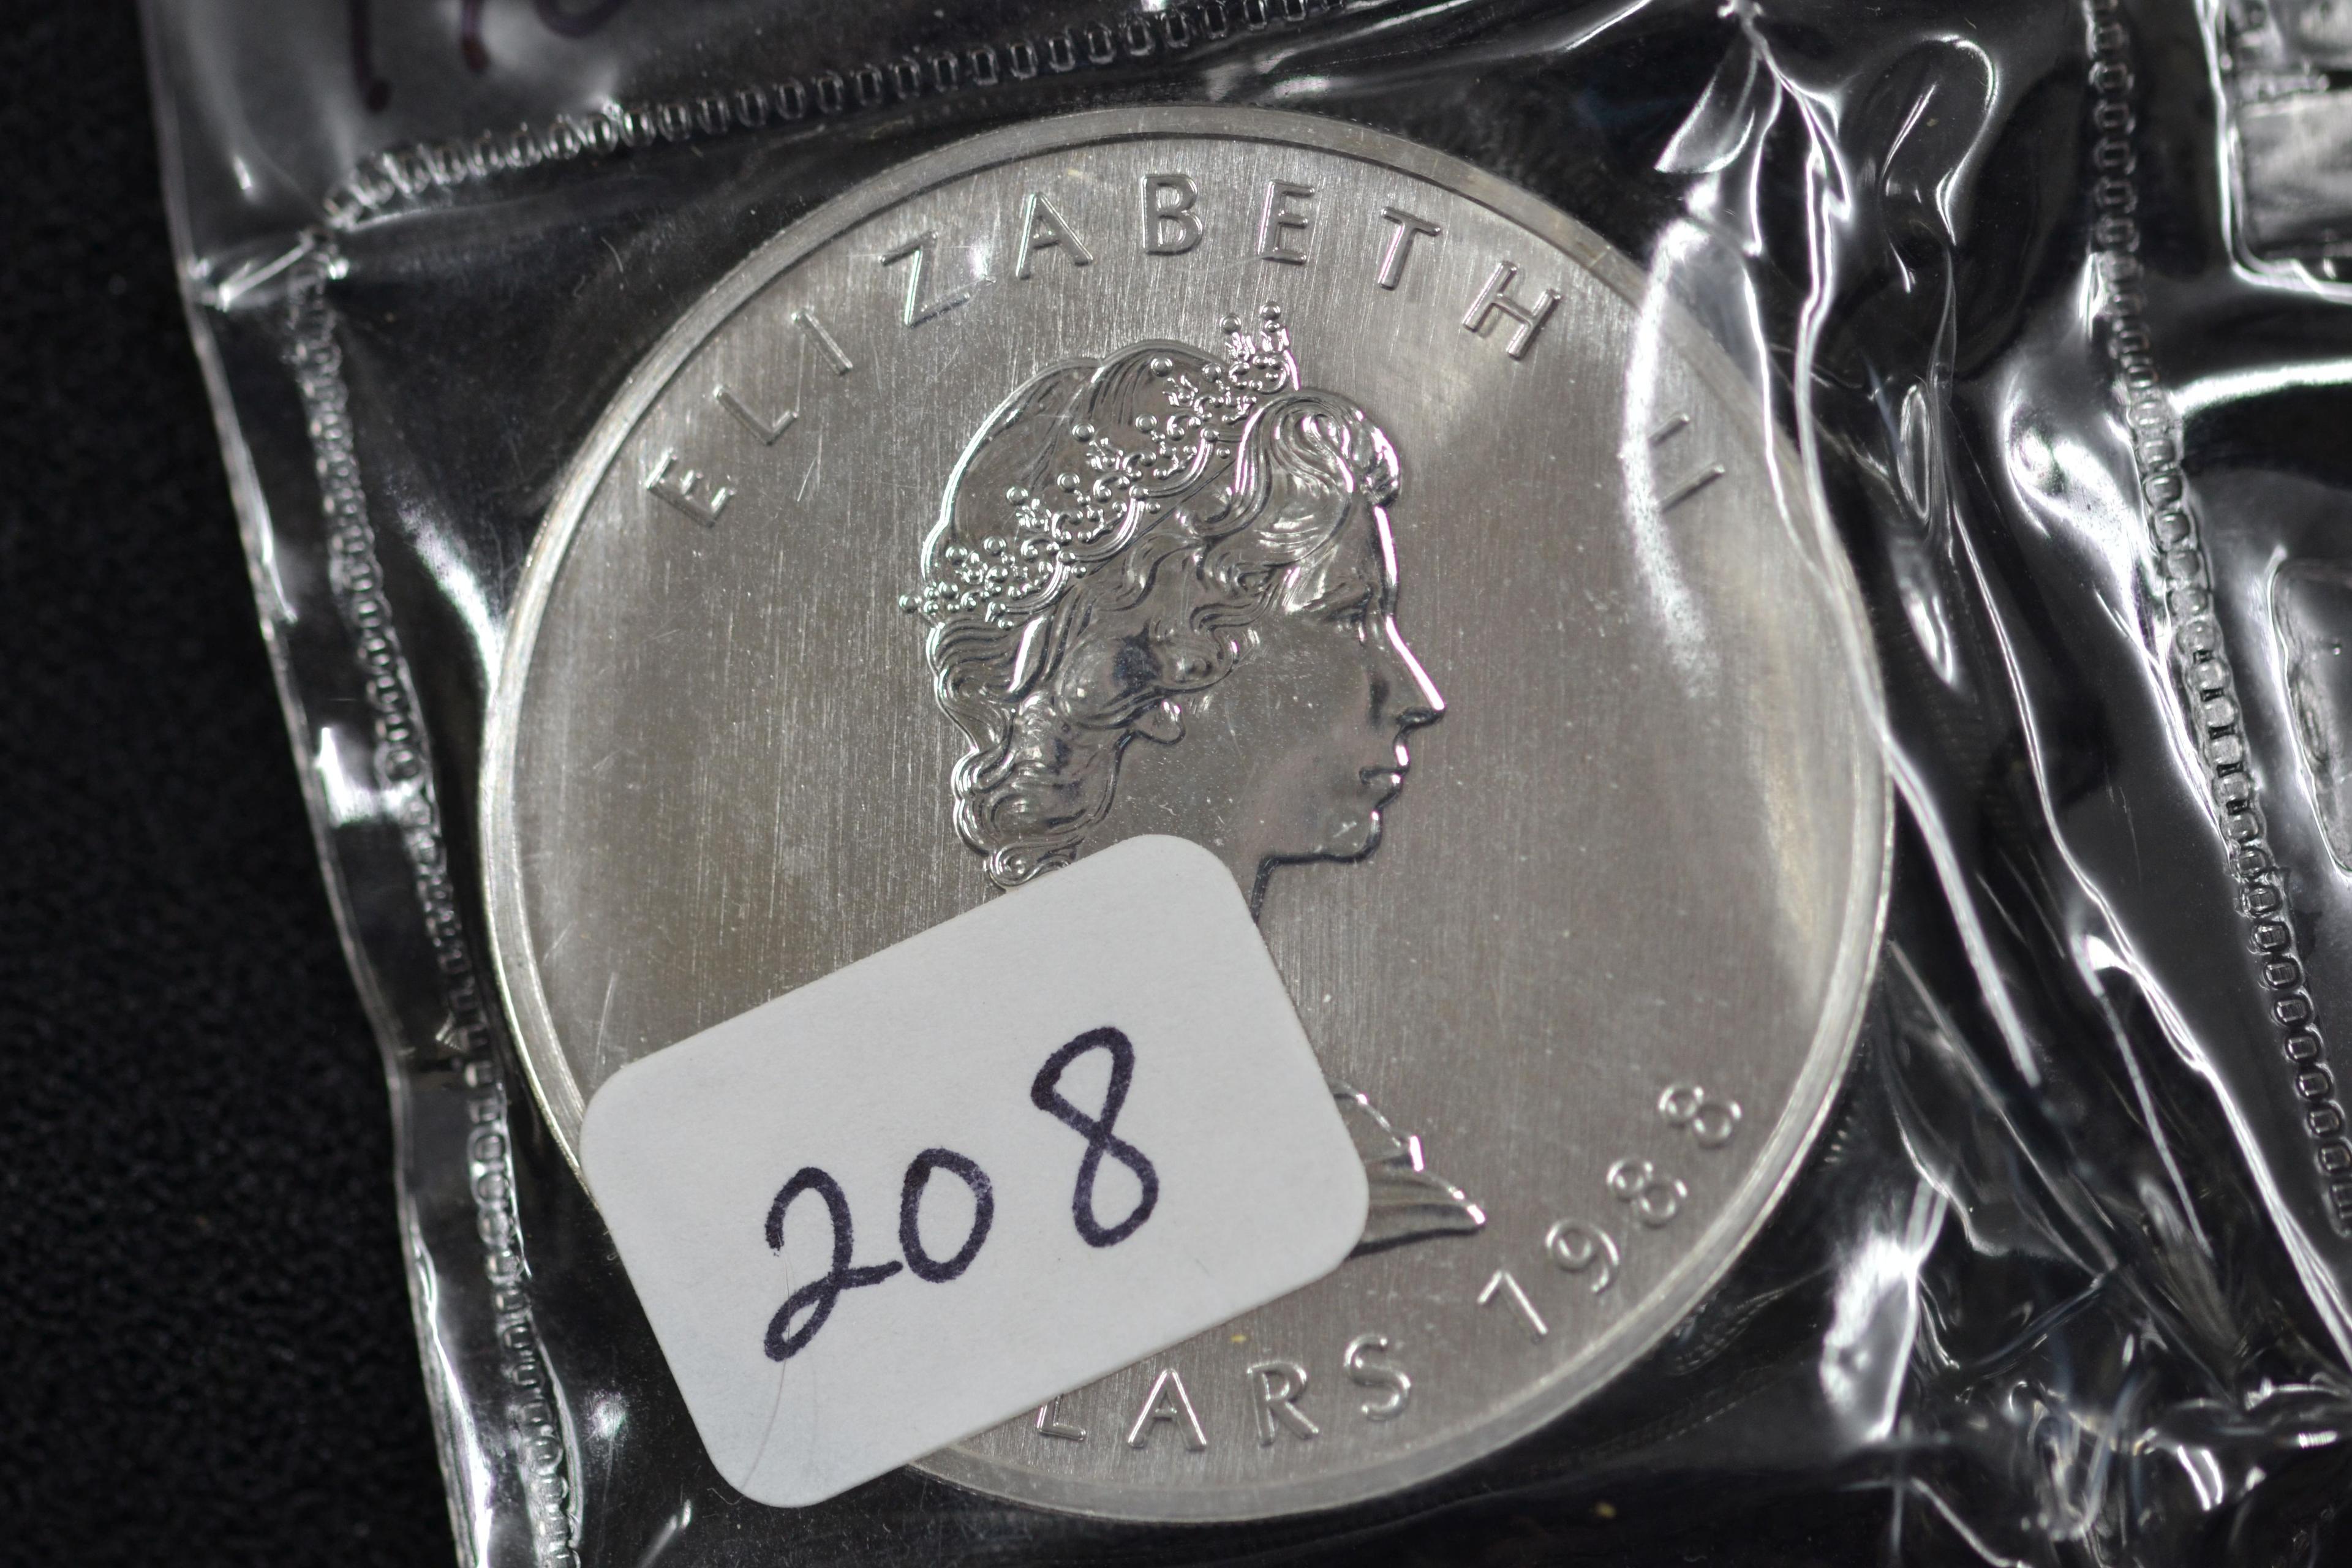 1988 Canada 1 Oz. Silver Dollar